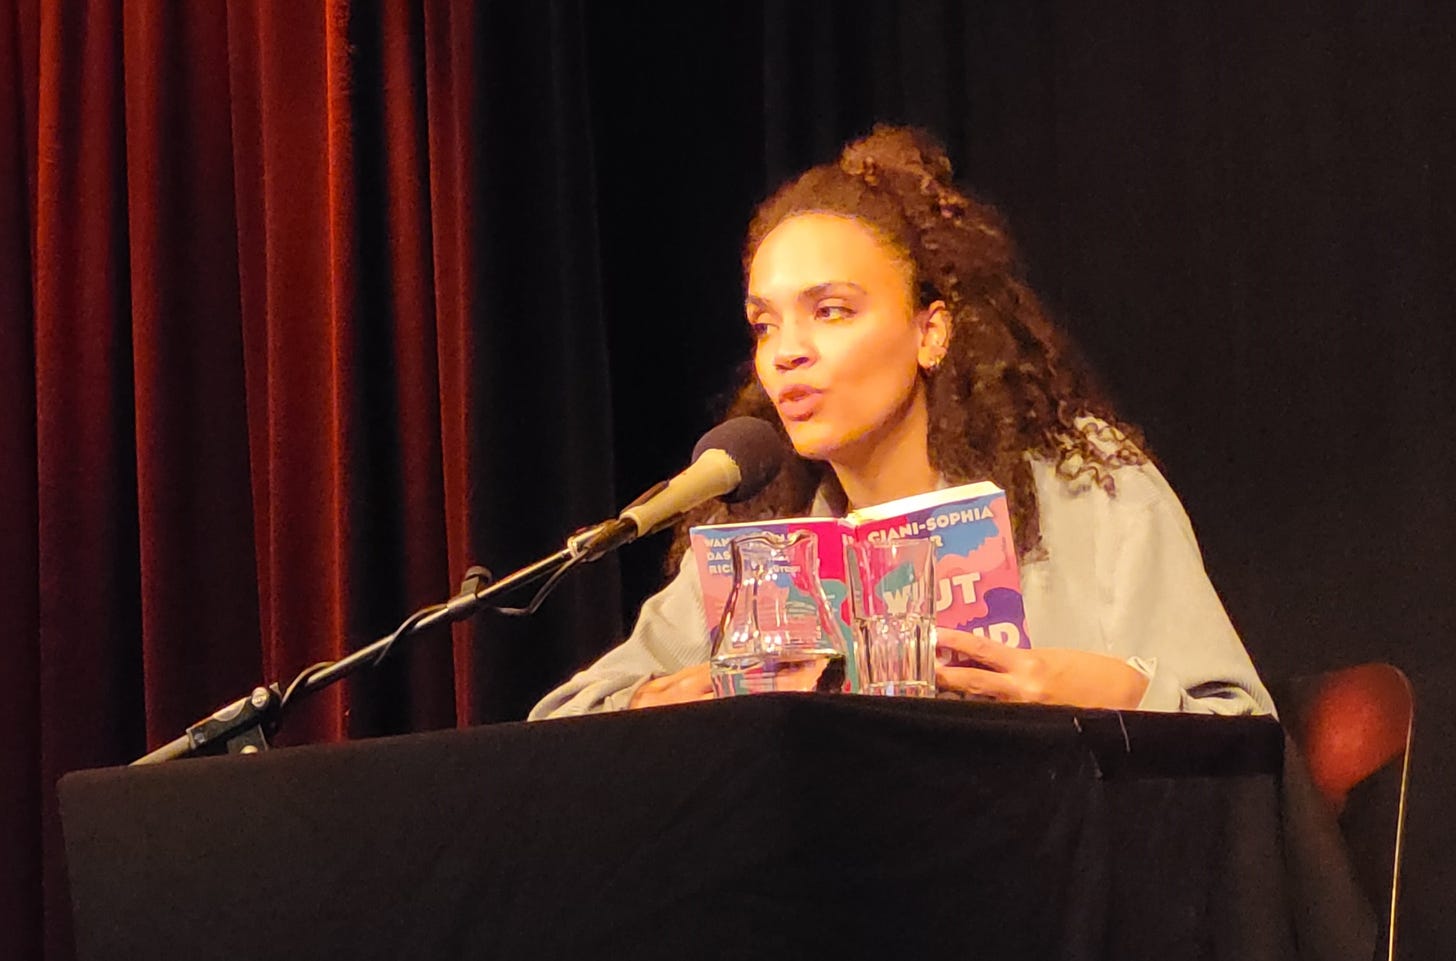 Ciani-Sophia Hoeder sitzt vor dunklem Hintergrund an einem schwarzen Tisch mit Mikrofon. In Händen hält sie ihr Buch „Wut und Böse“.